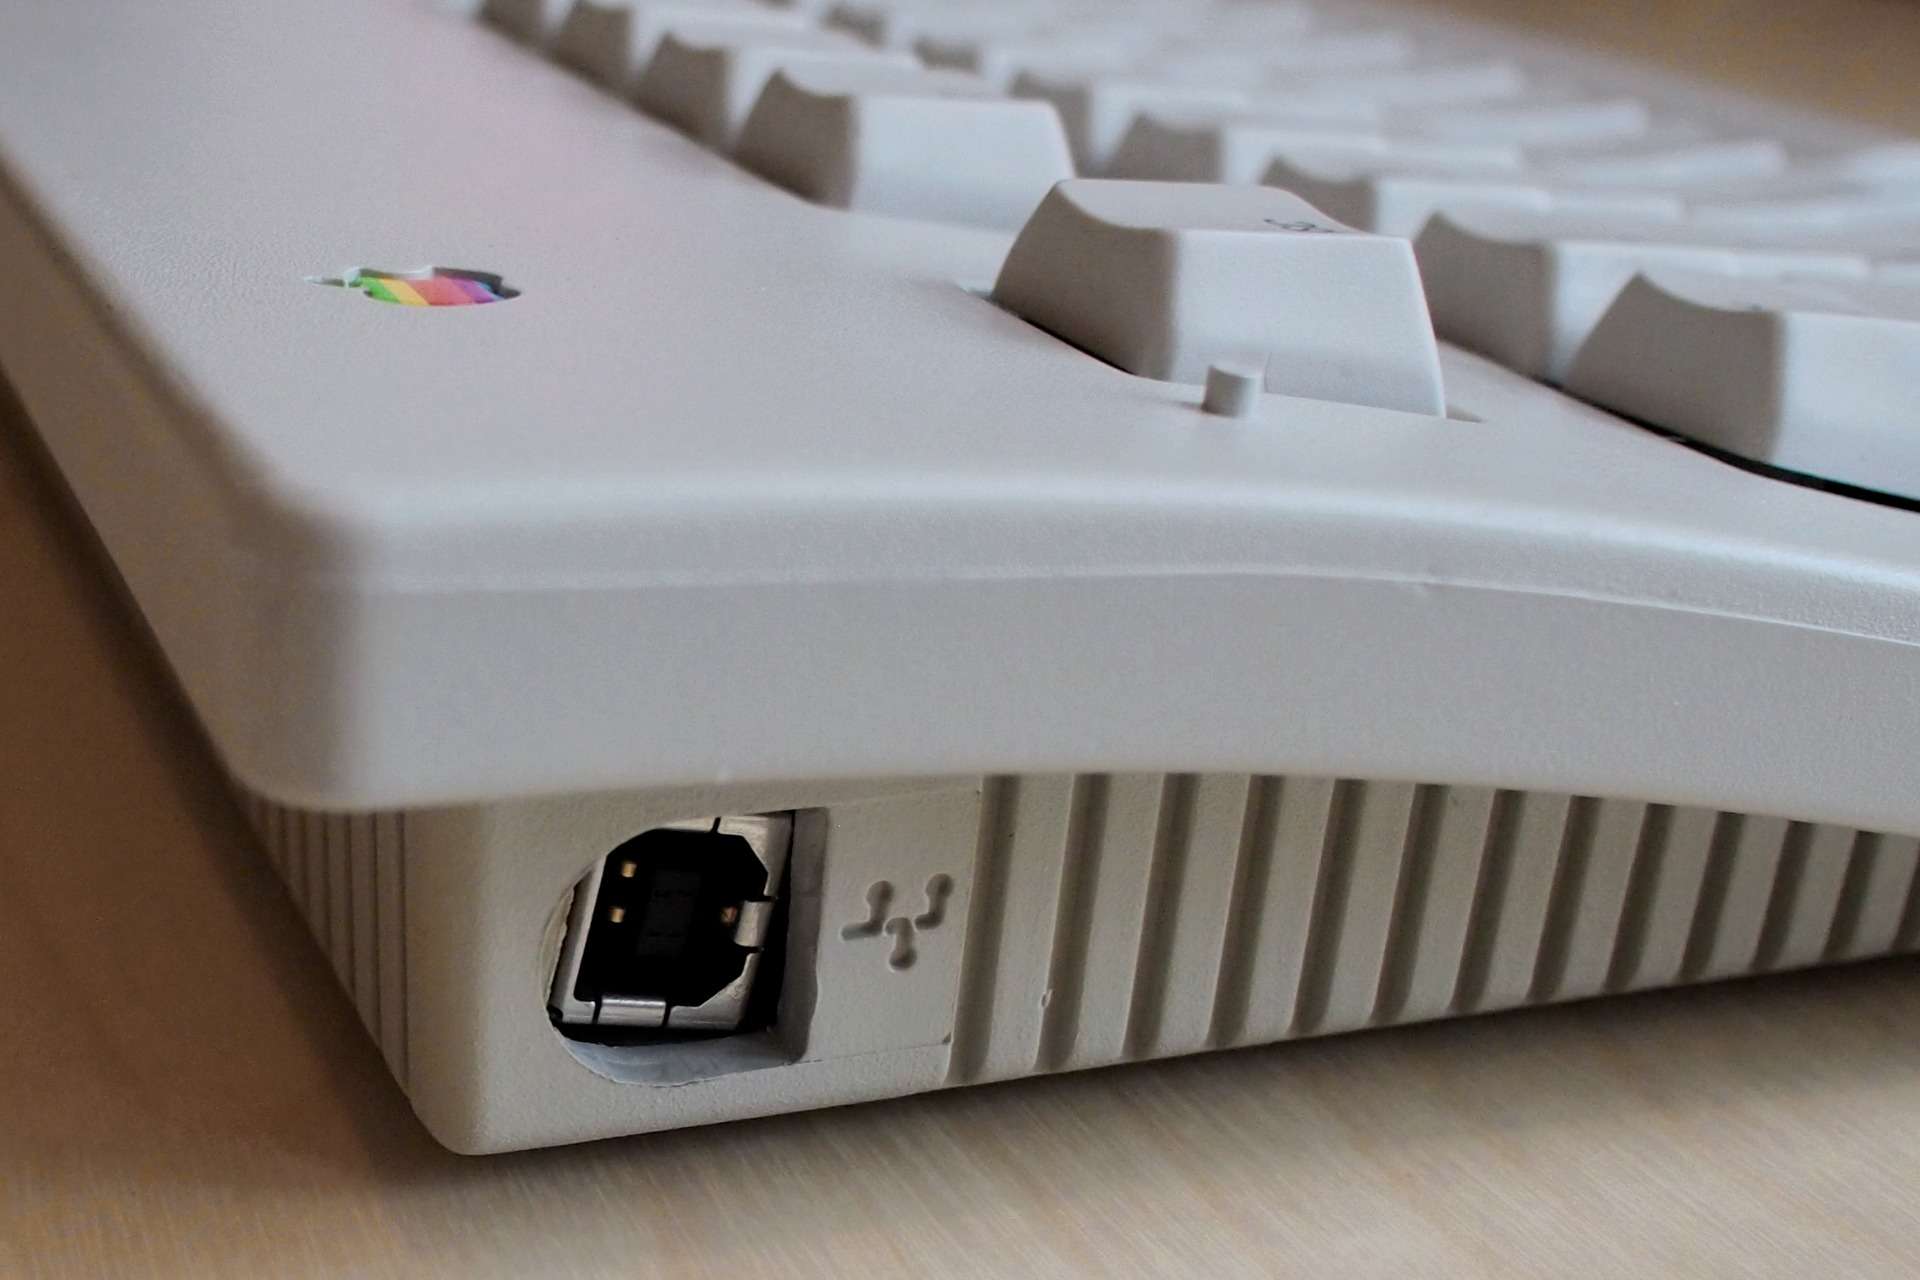 Этот день в истории Apple: представлена лучшая механическая клавиатура Apple Extended Keyboard II